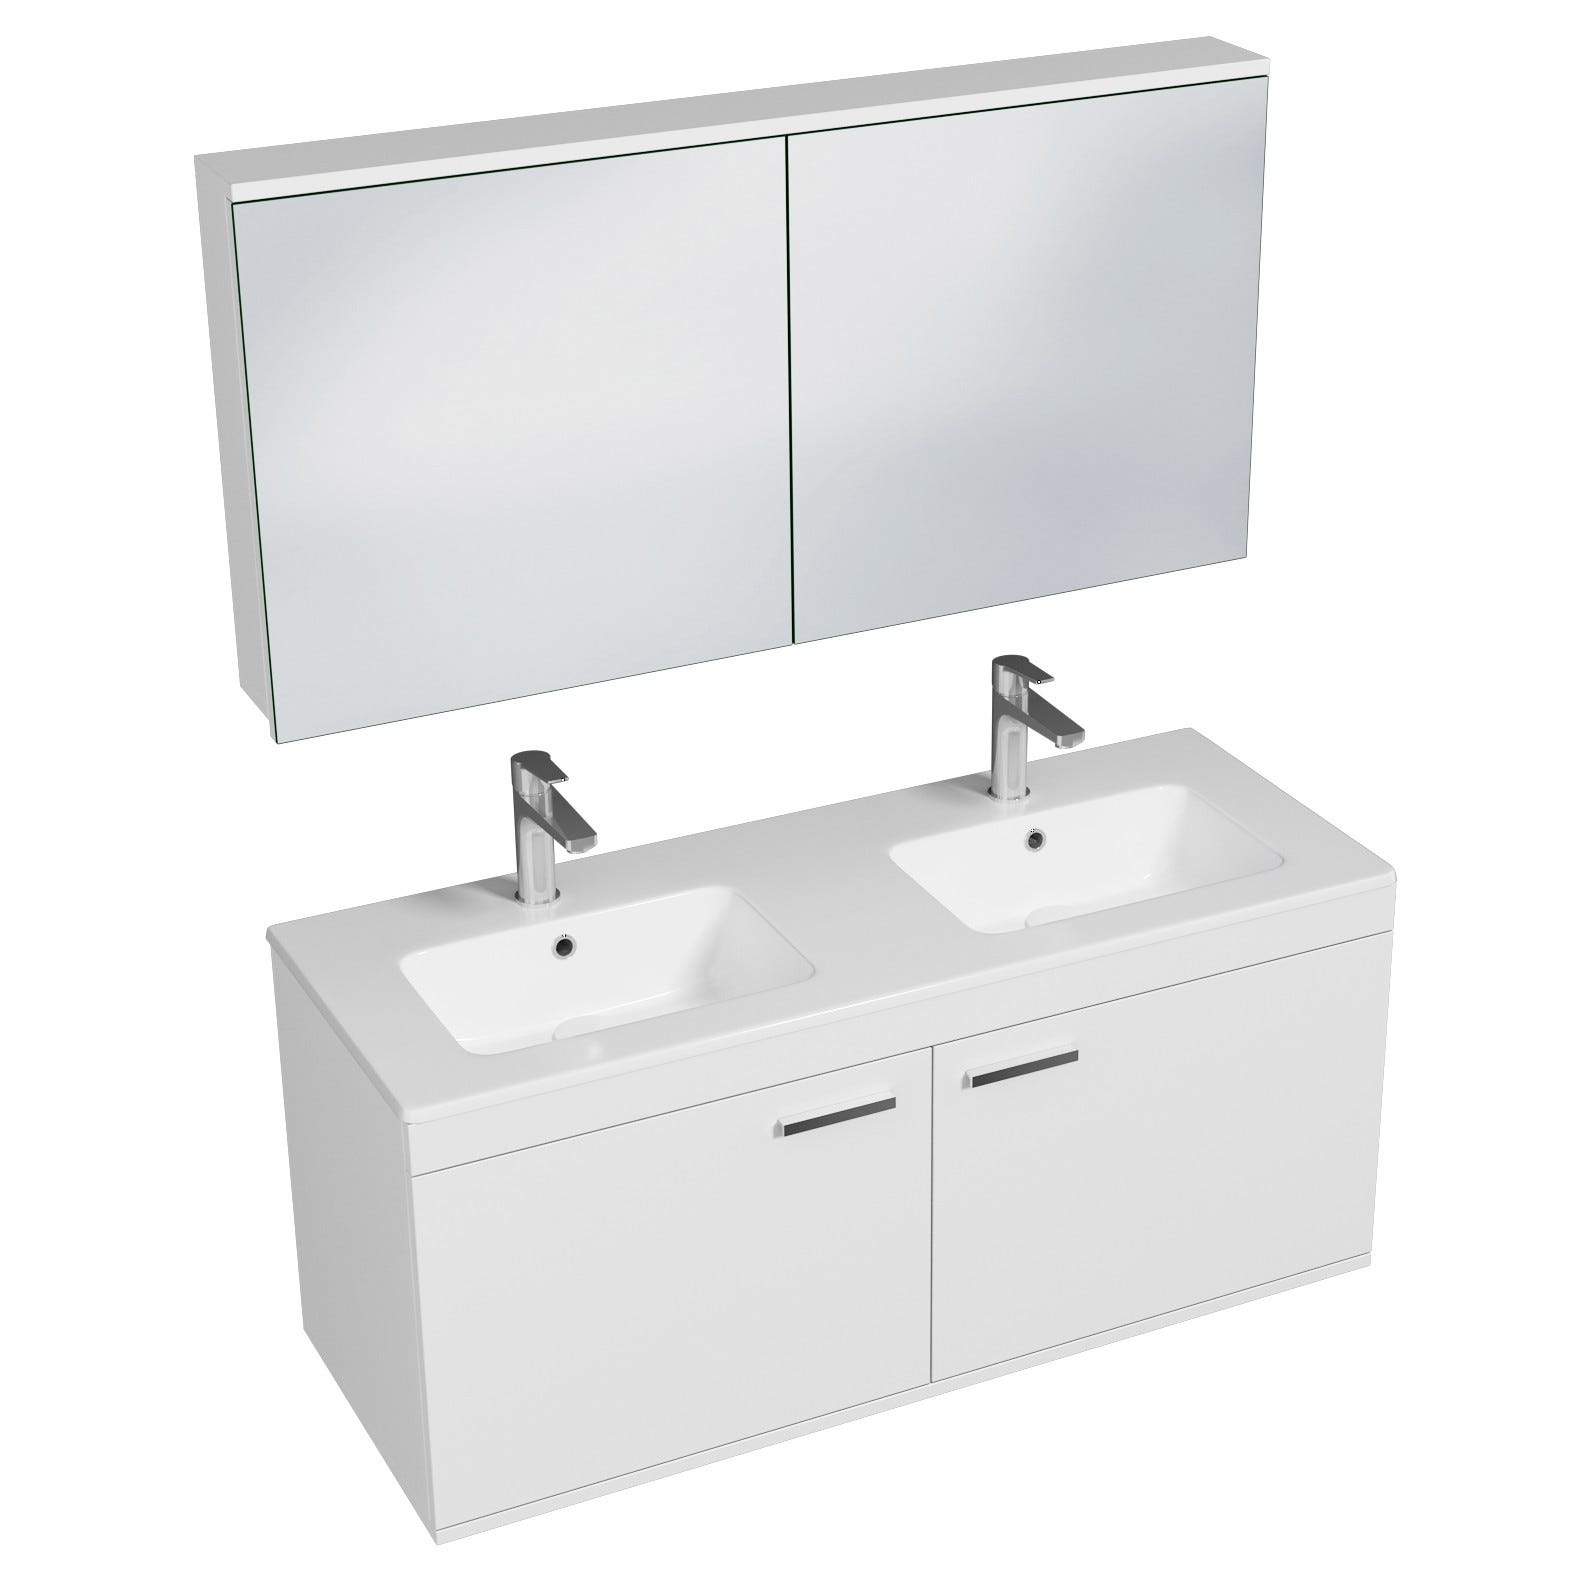 RUBITE Meuble salle de bain double vasque 2 portes blanc largeur 120 cm + miroir armoire 0